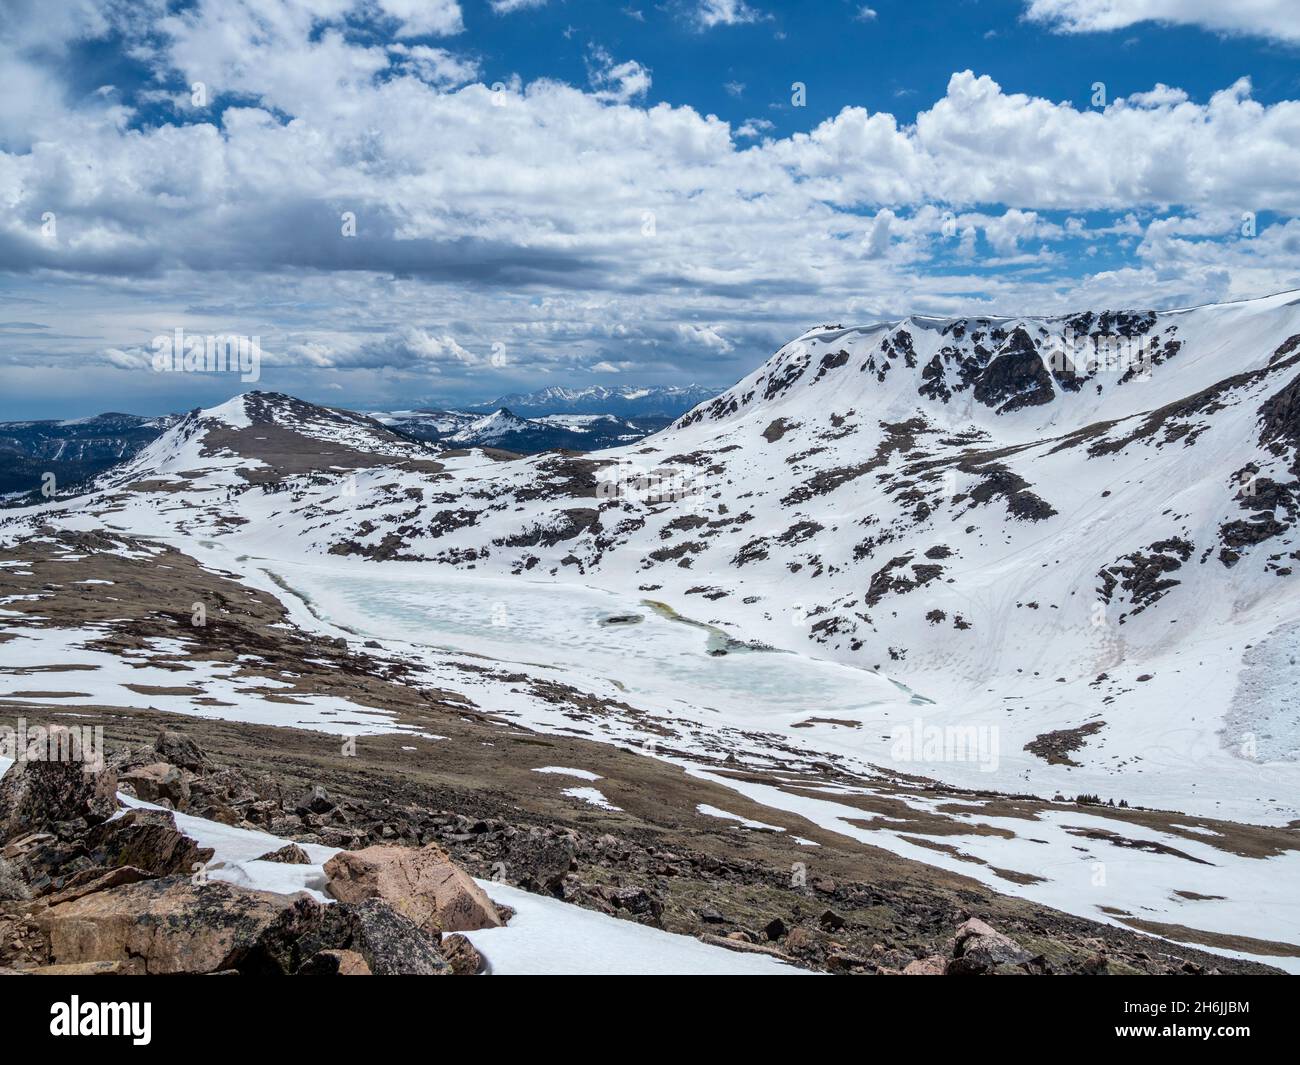 Montagnes enneigées et lac gelé près de Beartooth Pass, Wyoming, États-Unis d'Amérique, Amérique du Nord Banque D'Images